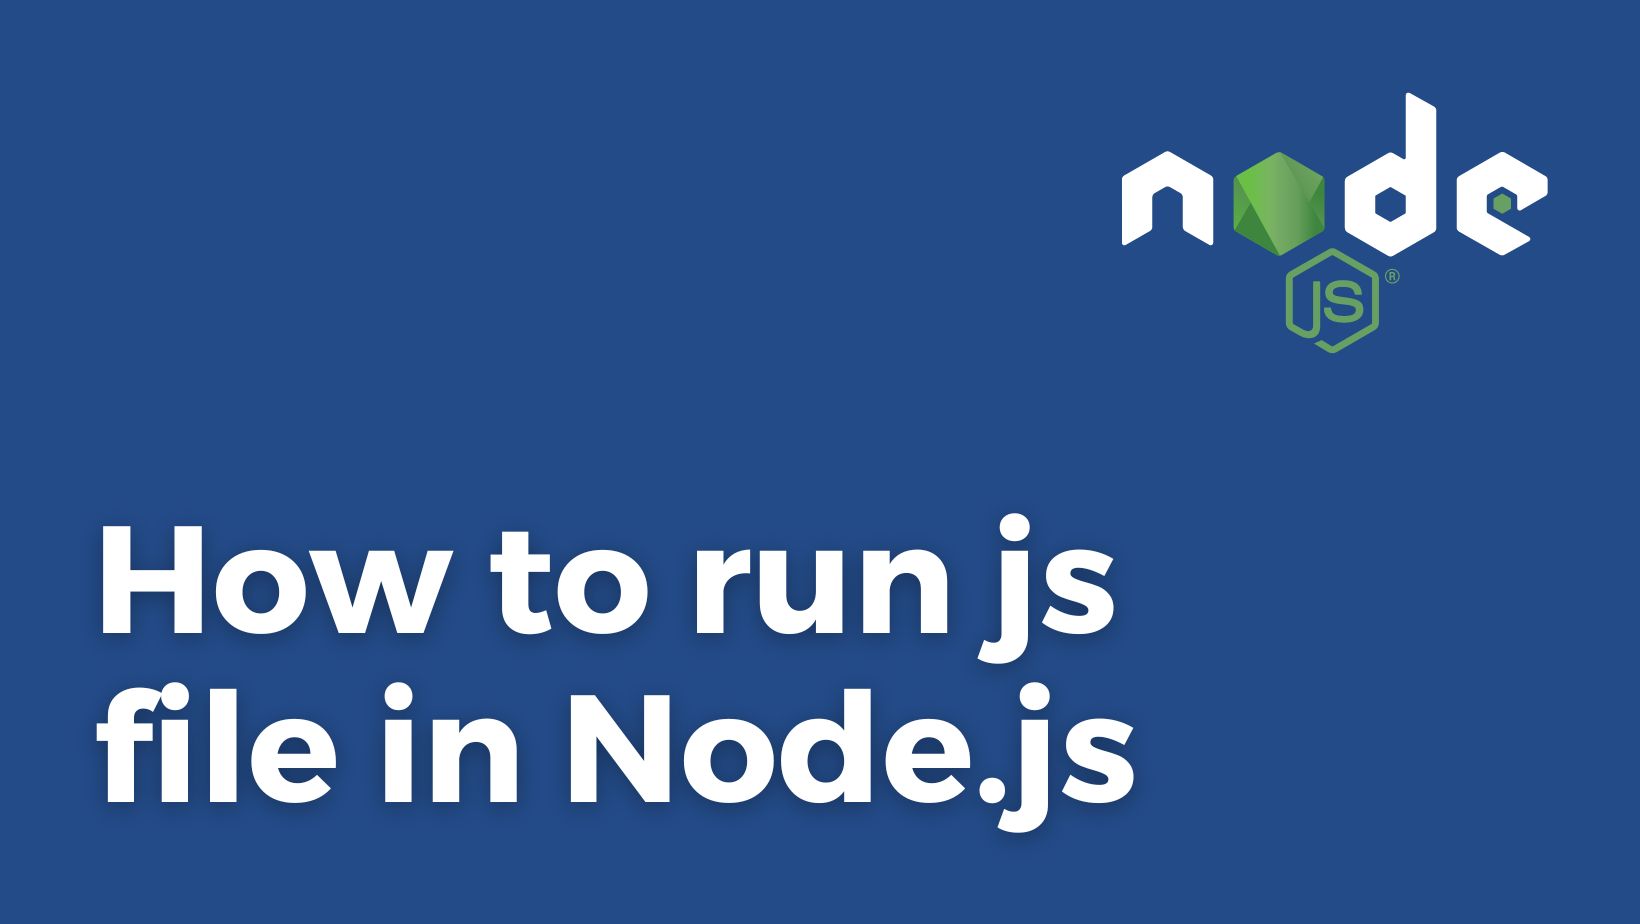 Run js file with Node.js